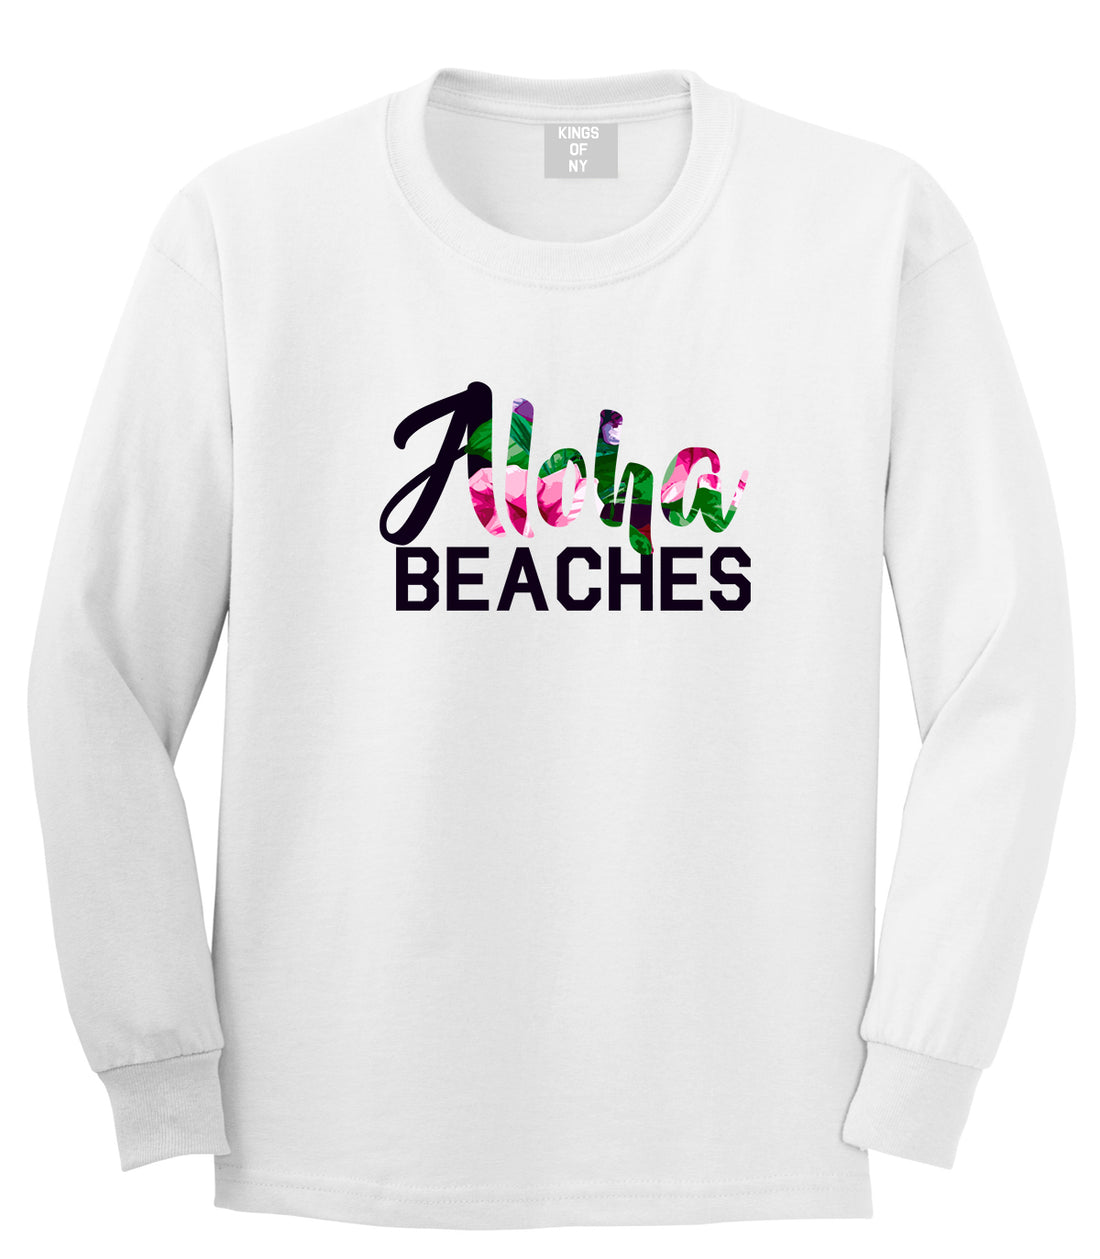 Aloha Beaches White Long Sleeve T-Shirt by Kings Of NY